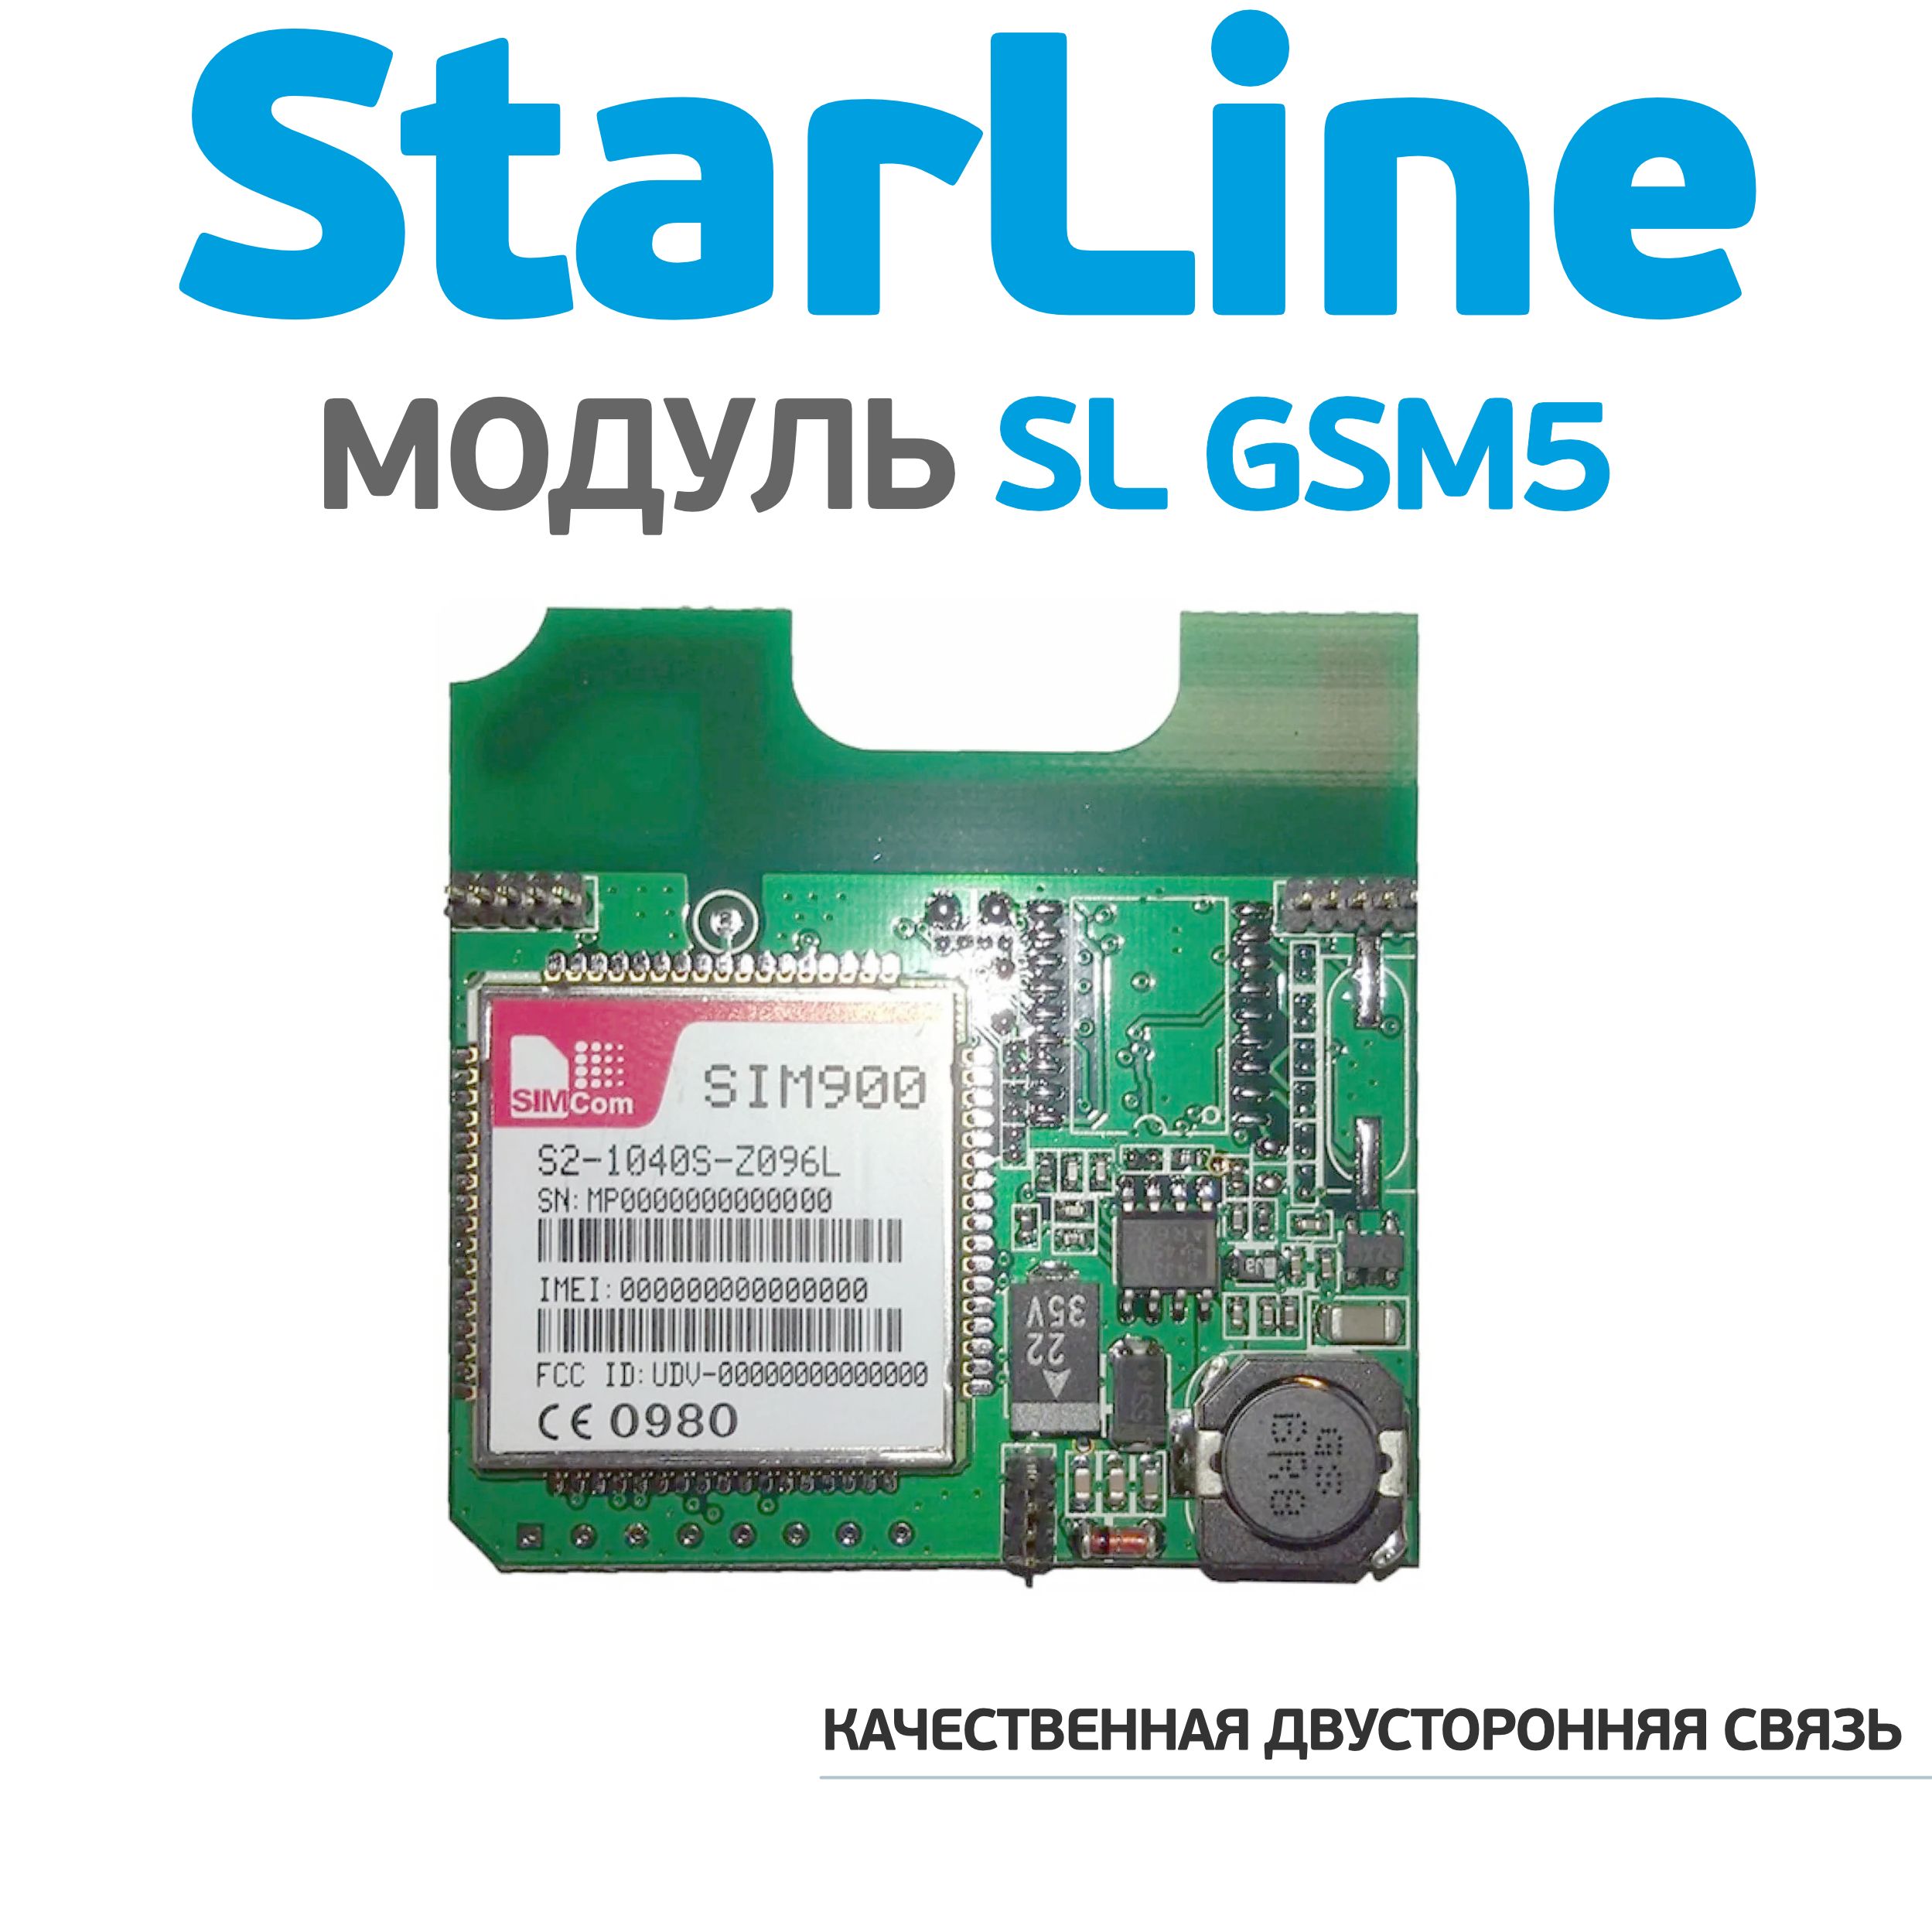 Старлайн gsm цена. STARLINE gsm5-мастер. Модуль STARLINE SL gsm5 мастер. Модуль SL GSM+BT-6 мастер.